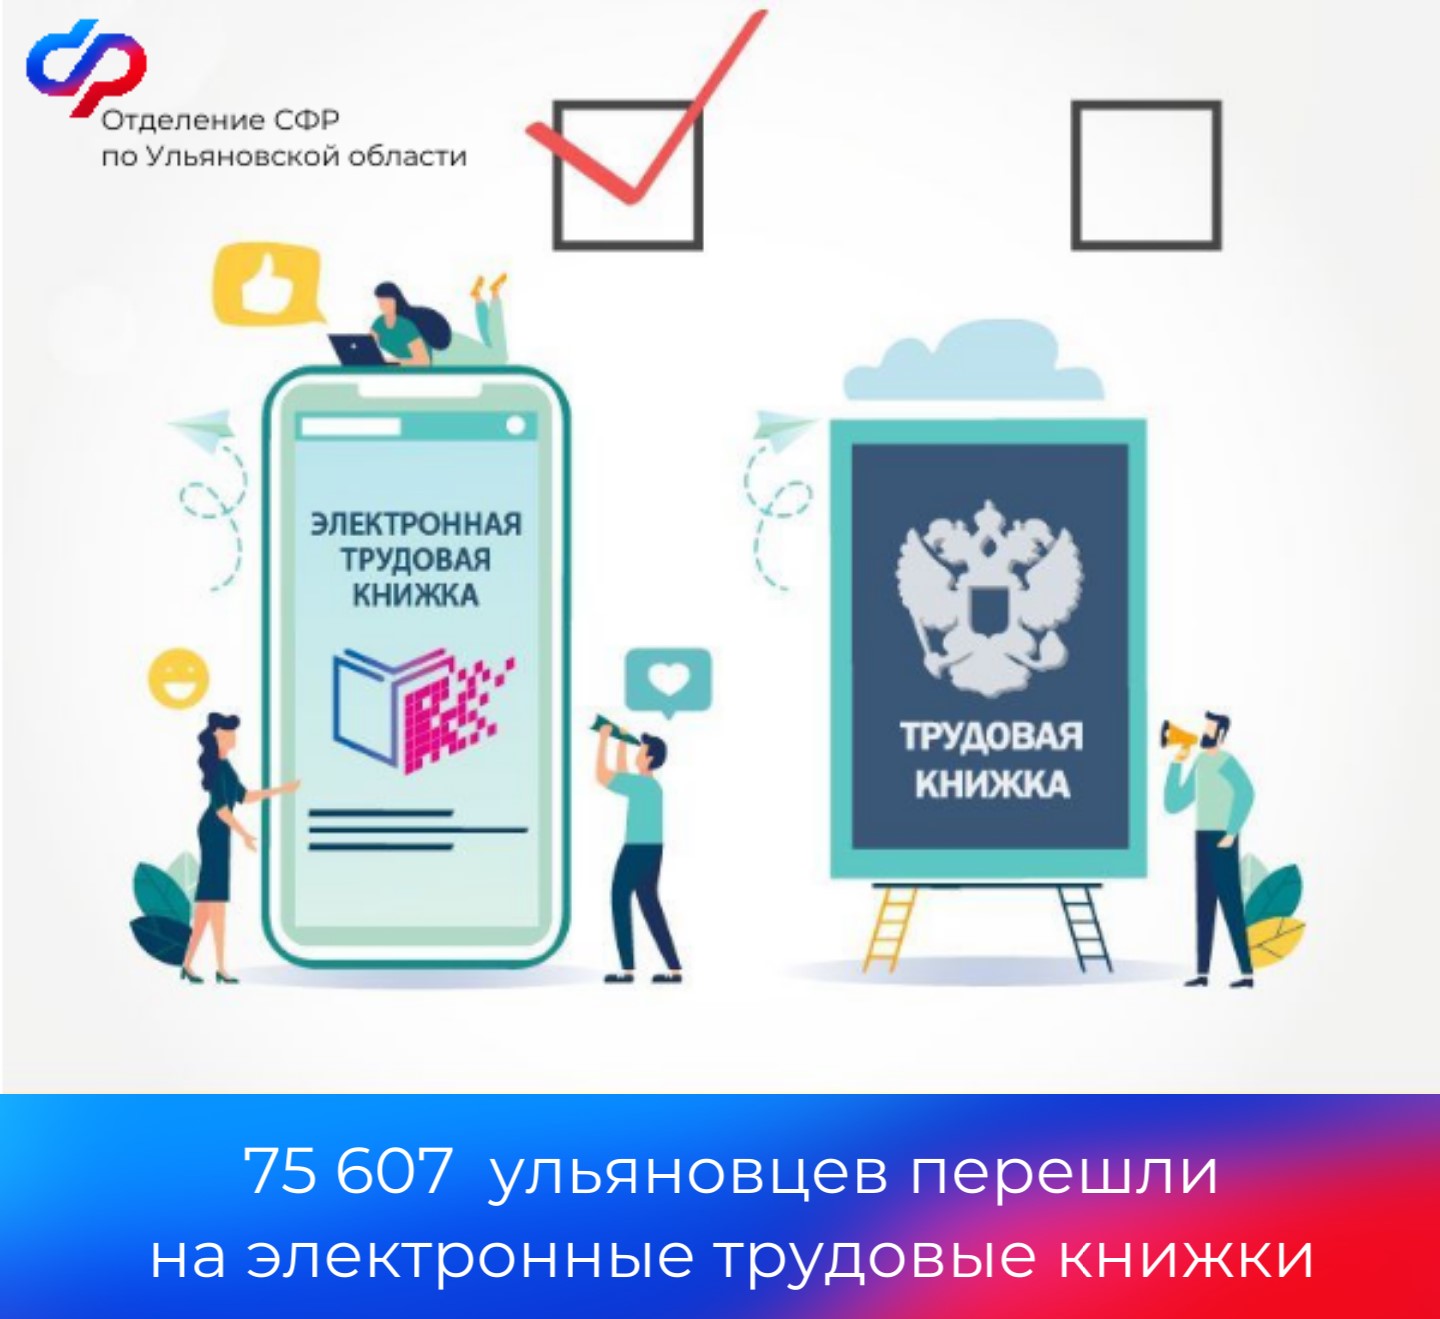 Более 75 тысяч жителей Ульяновской области перешли на  электронную трудовую книжку.